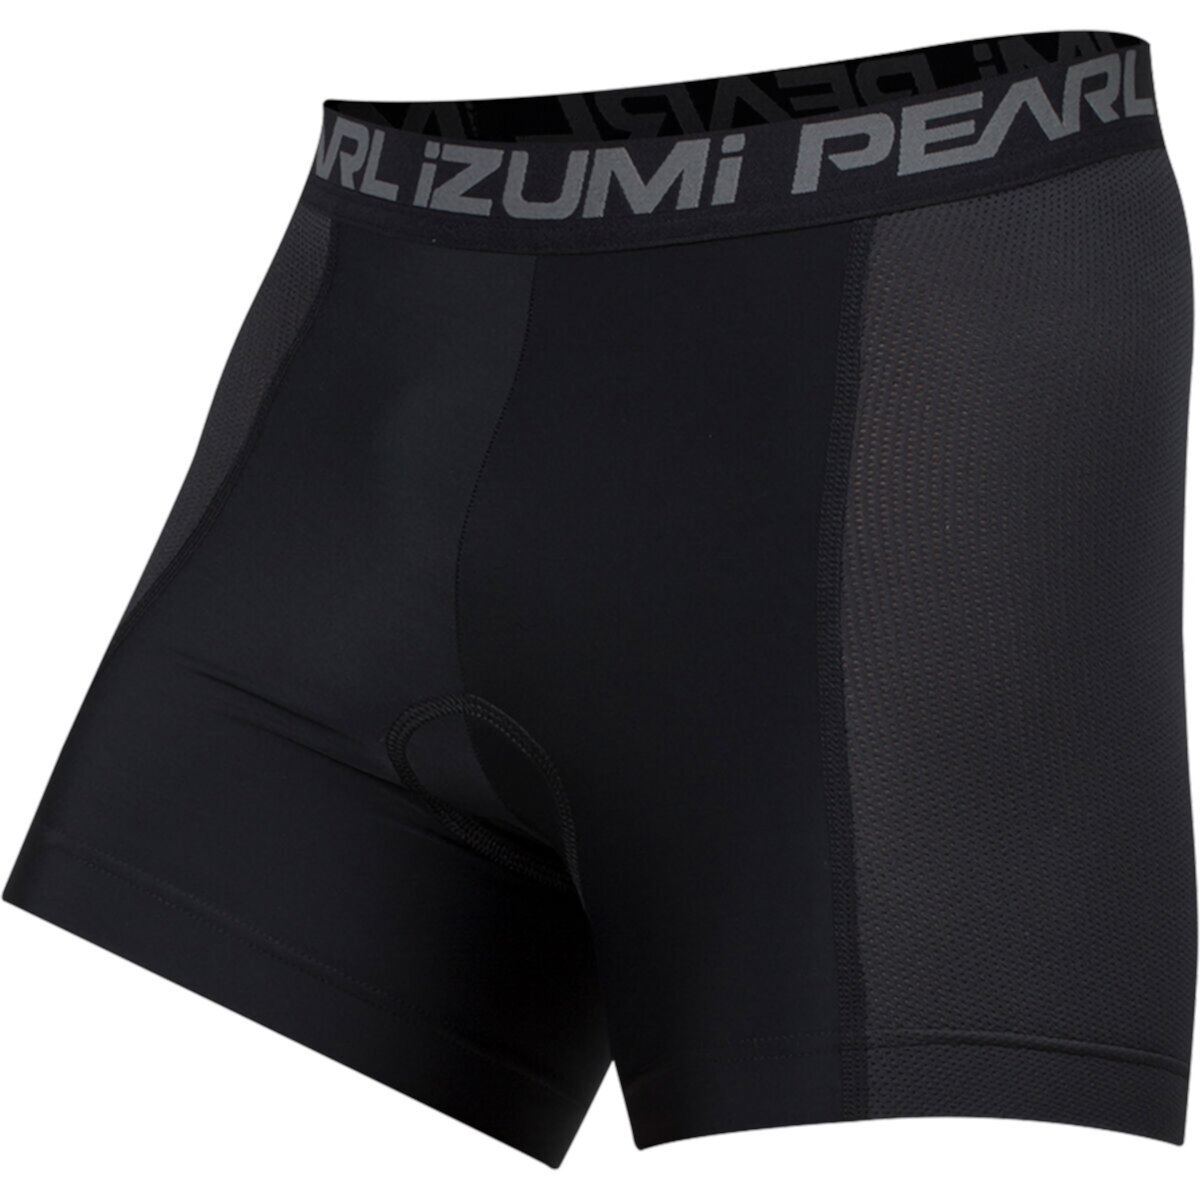 Лайнер PEARL iZUMi Versa Liner Pearl Izumi